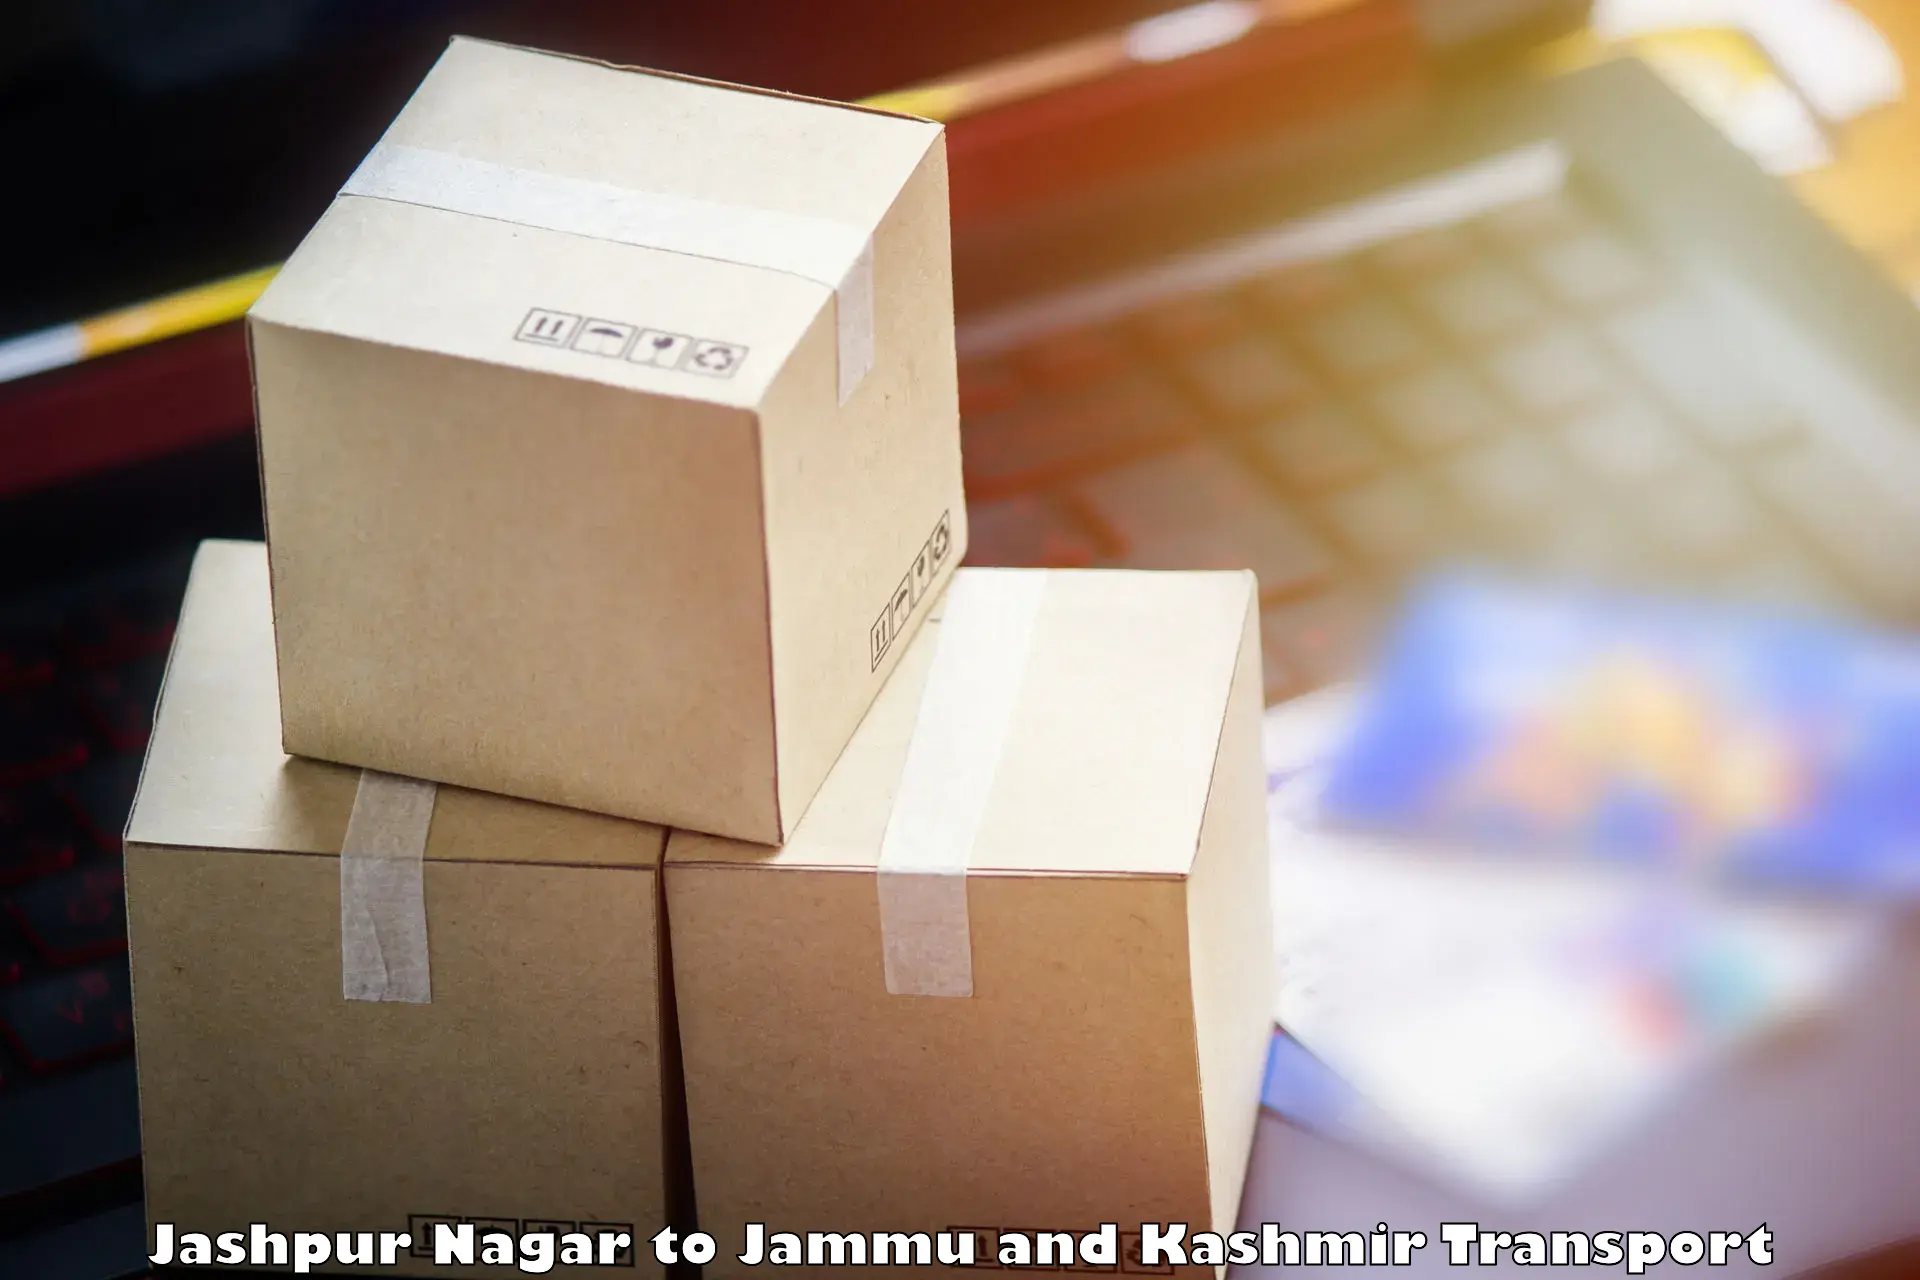 Shipping partner Jashpur Nagar to NIT Srinagar